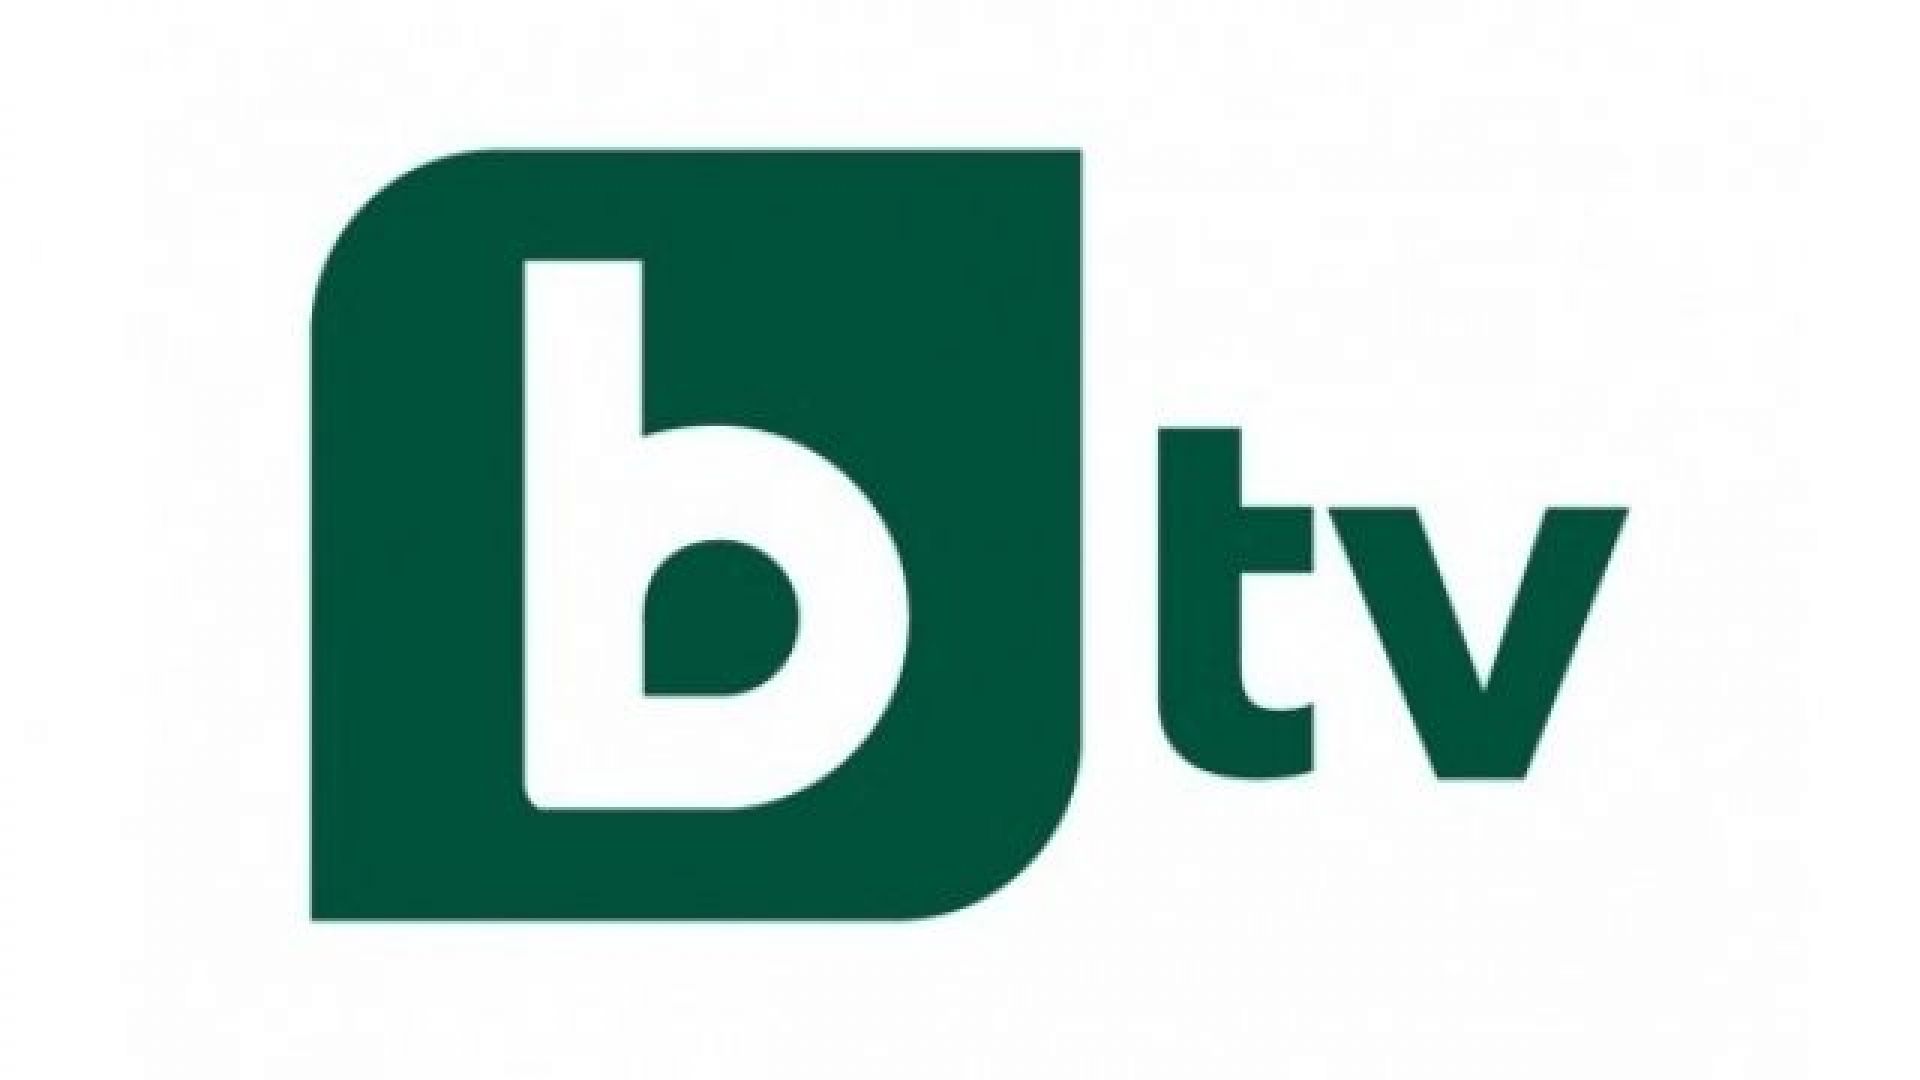 Програмите на bTV спряха излъчване за близо половин час. Всички